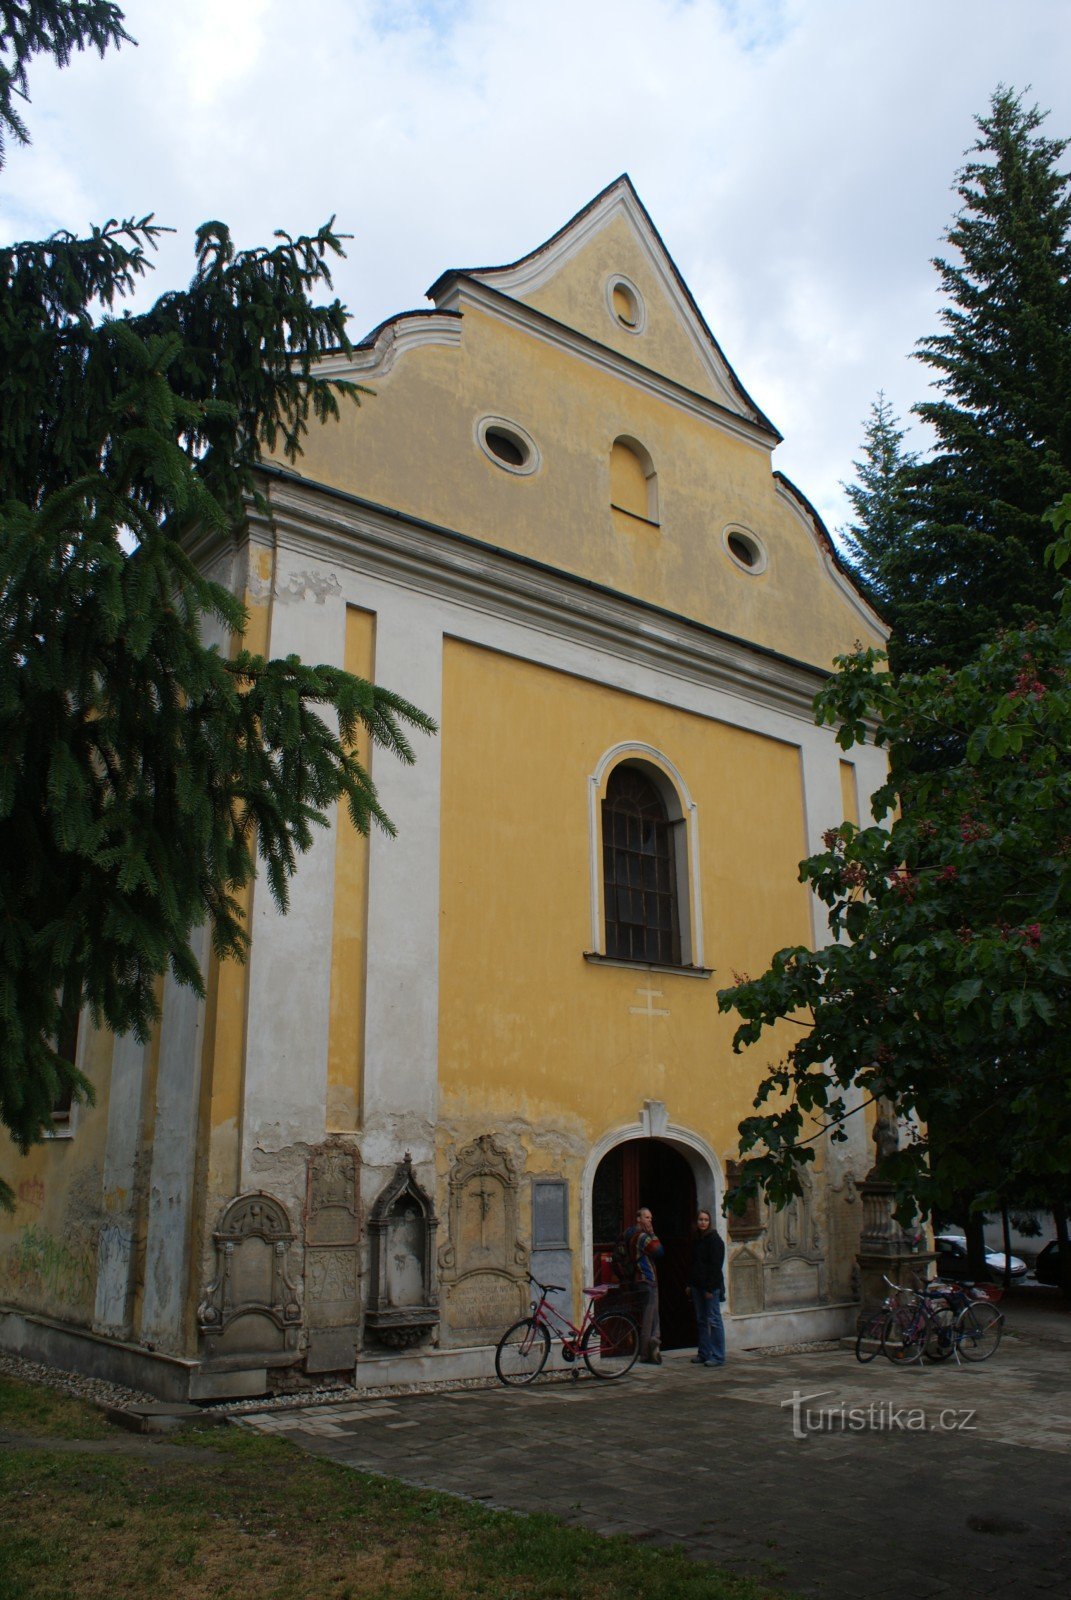 Šumperk - Barborka (nhà thờ và nhà nguyện nghĩa trang của Thánh Barbara)